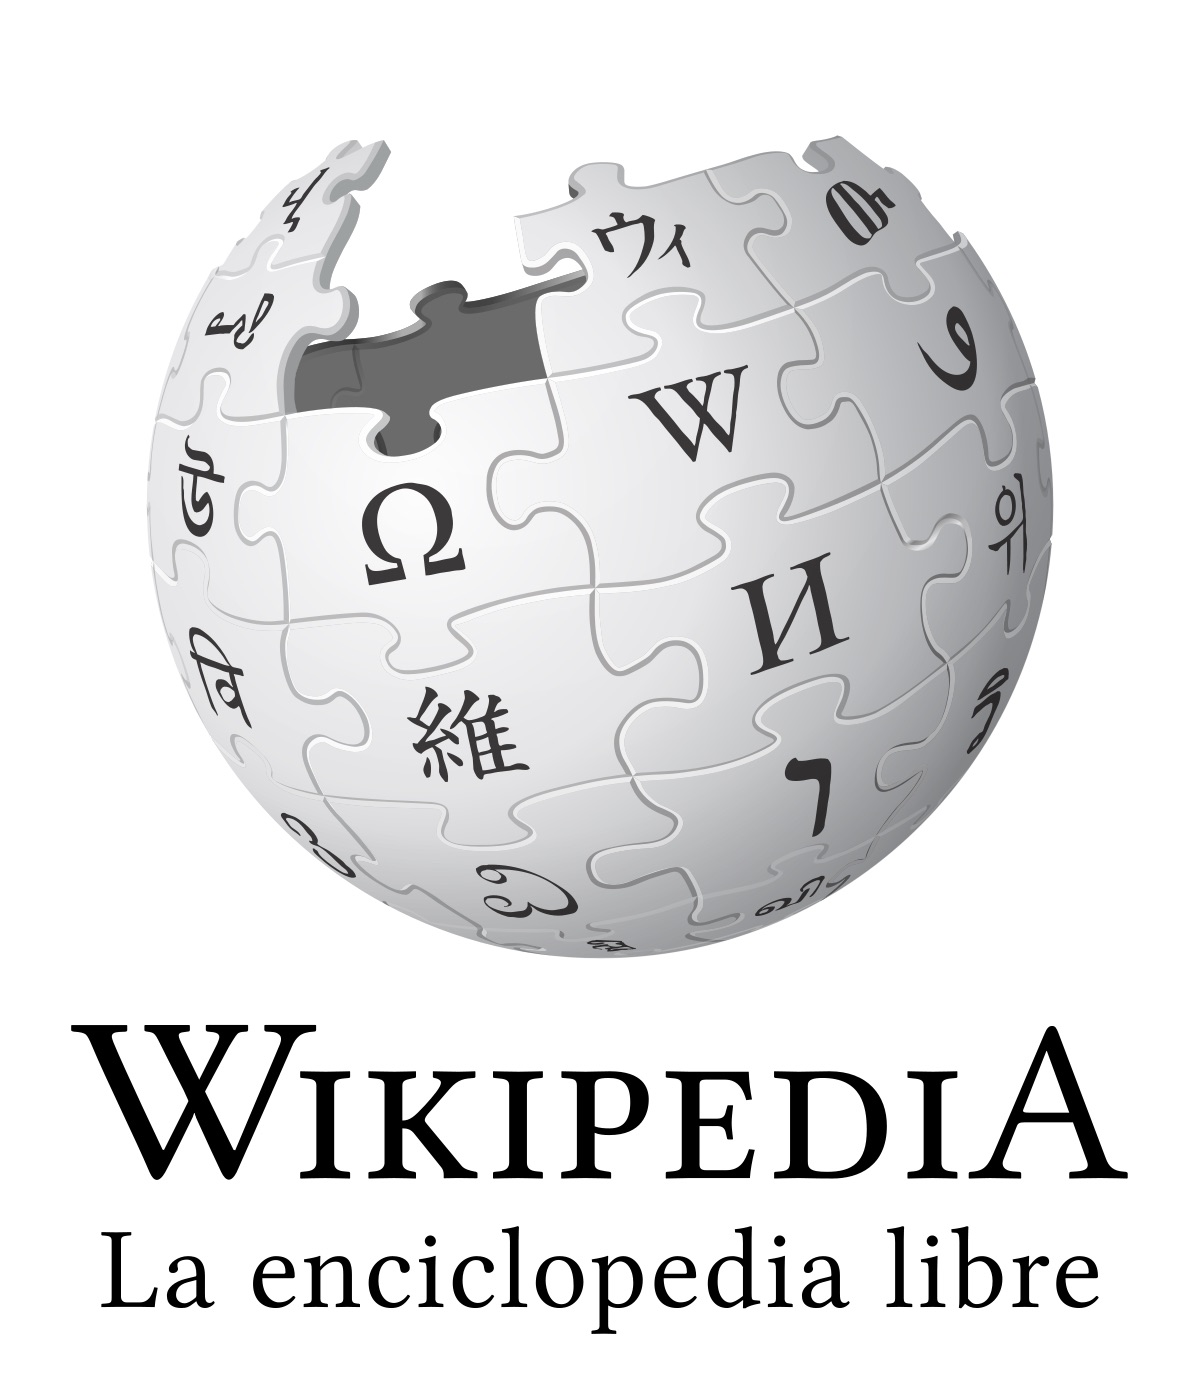 Wikipedia utiliza un logotipo de un globo-rompecabezas que da referencia a los símbolos de distintos lenguajes e idiomas en las que se utiliza el sitio.